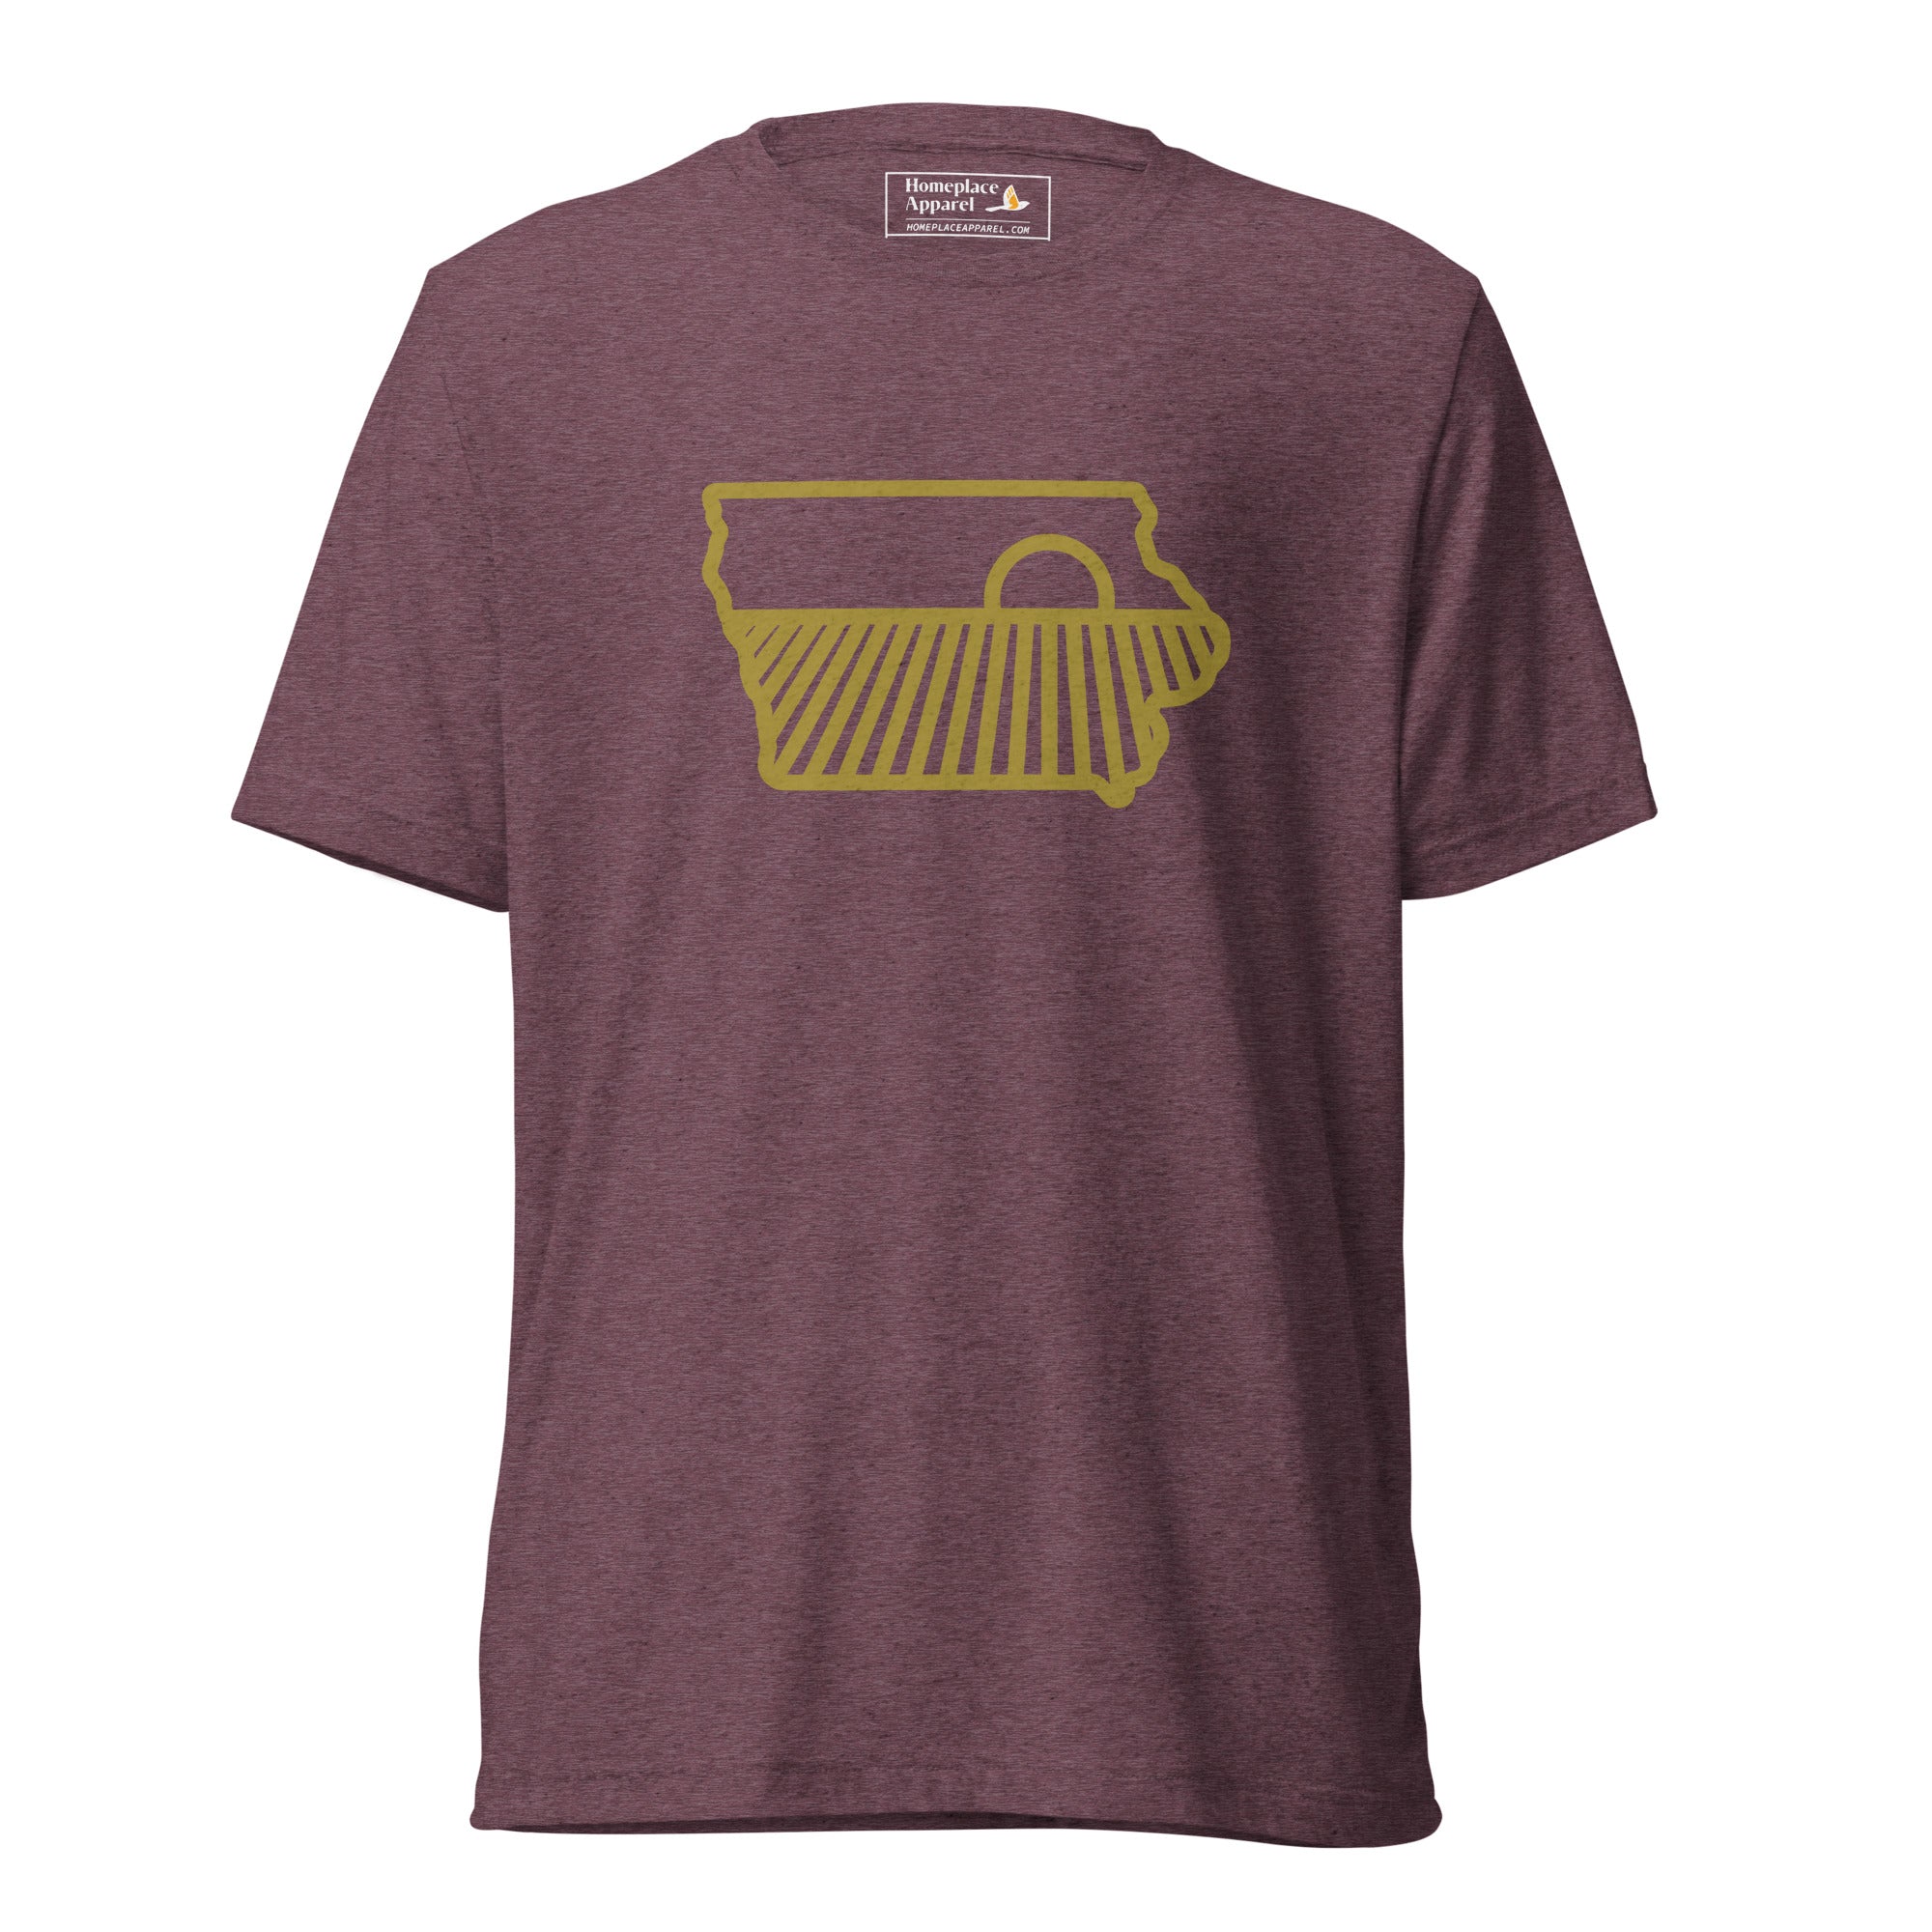 unisex-tri-blend-t-shirt-maroon-triblend-front-650f70193f480.jpg